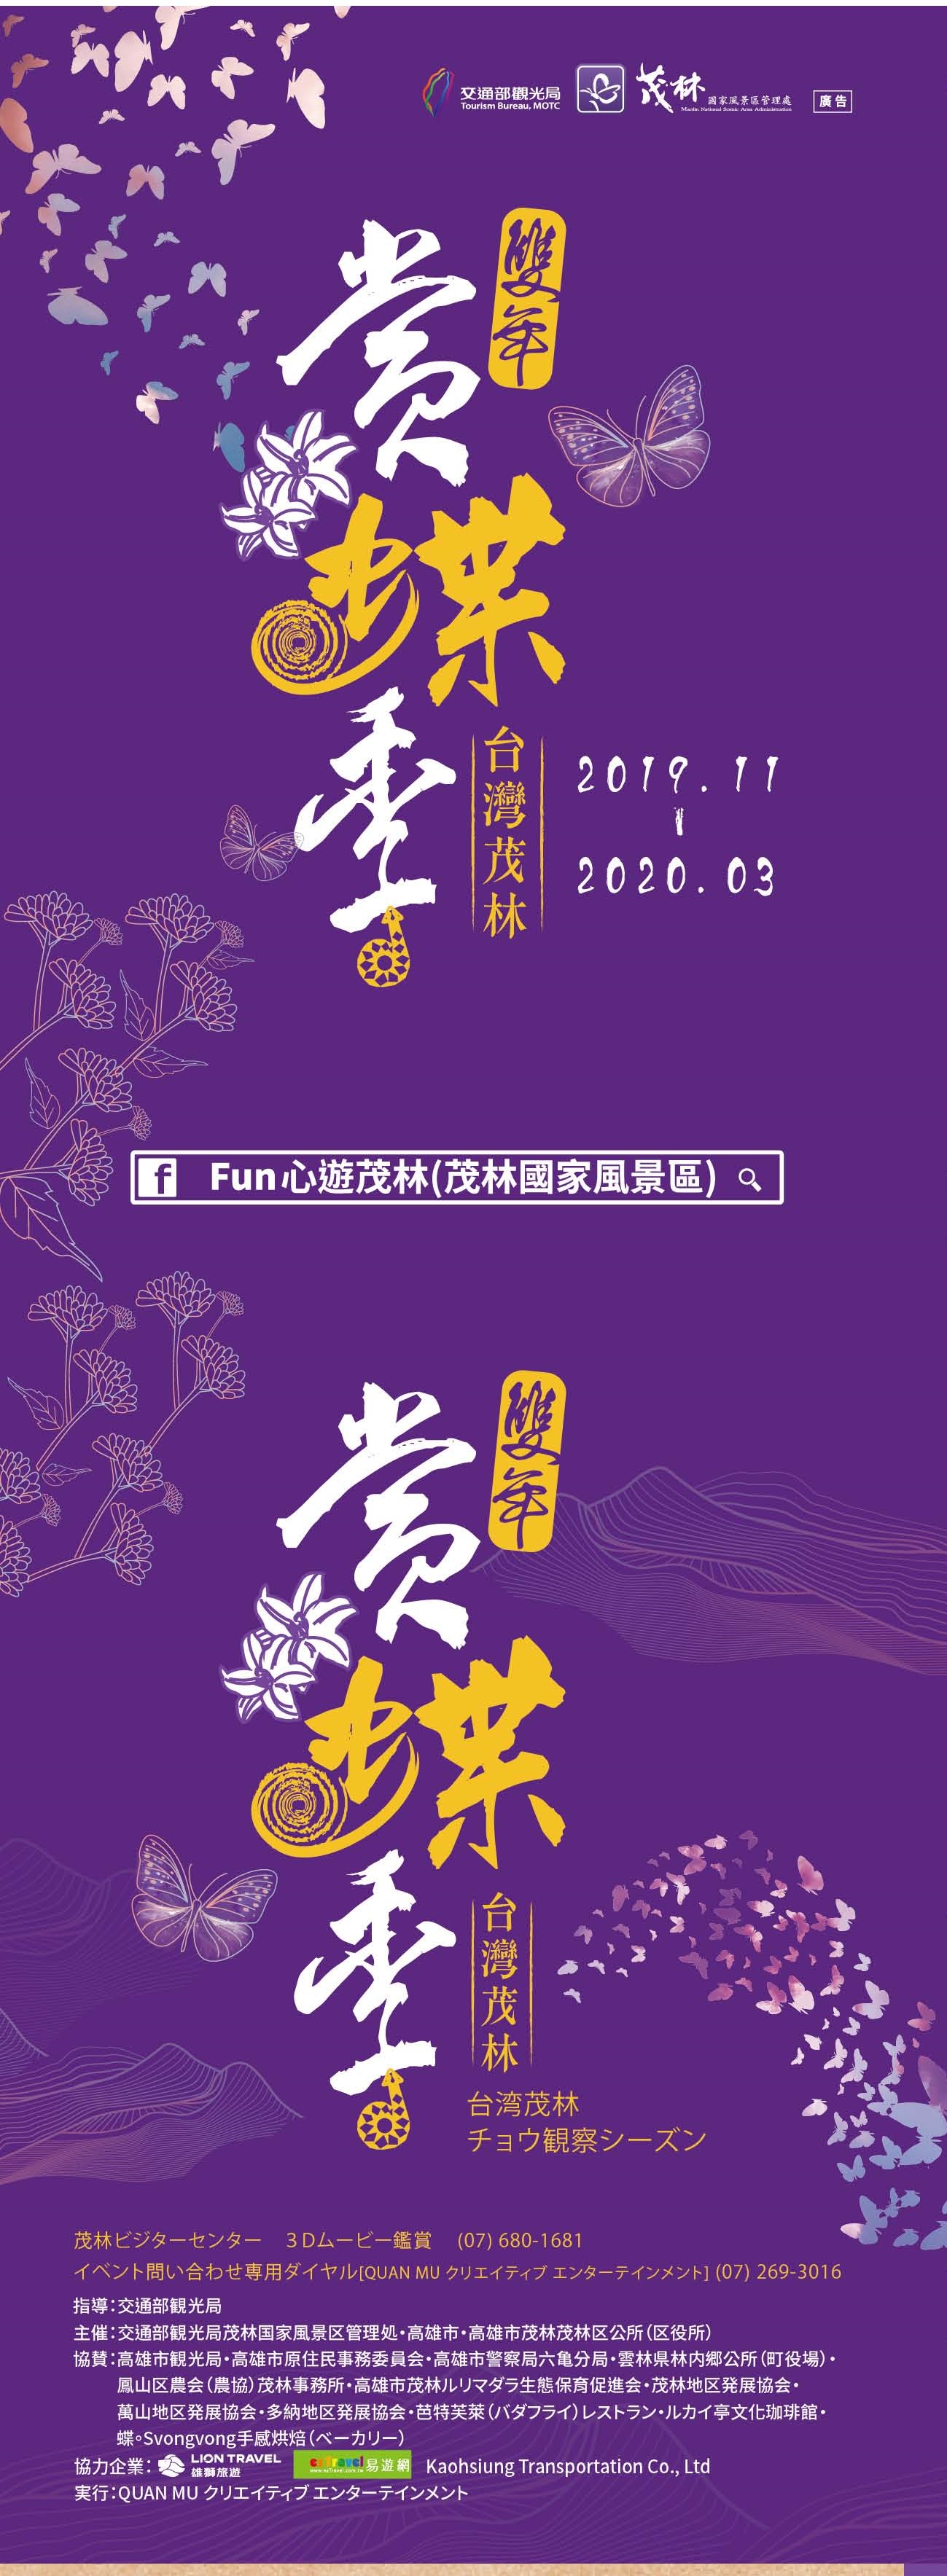 2019-2020 茂林紫蝶幽谷―ダブルイヤー蝶観察イベント